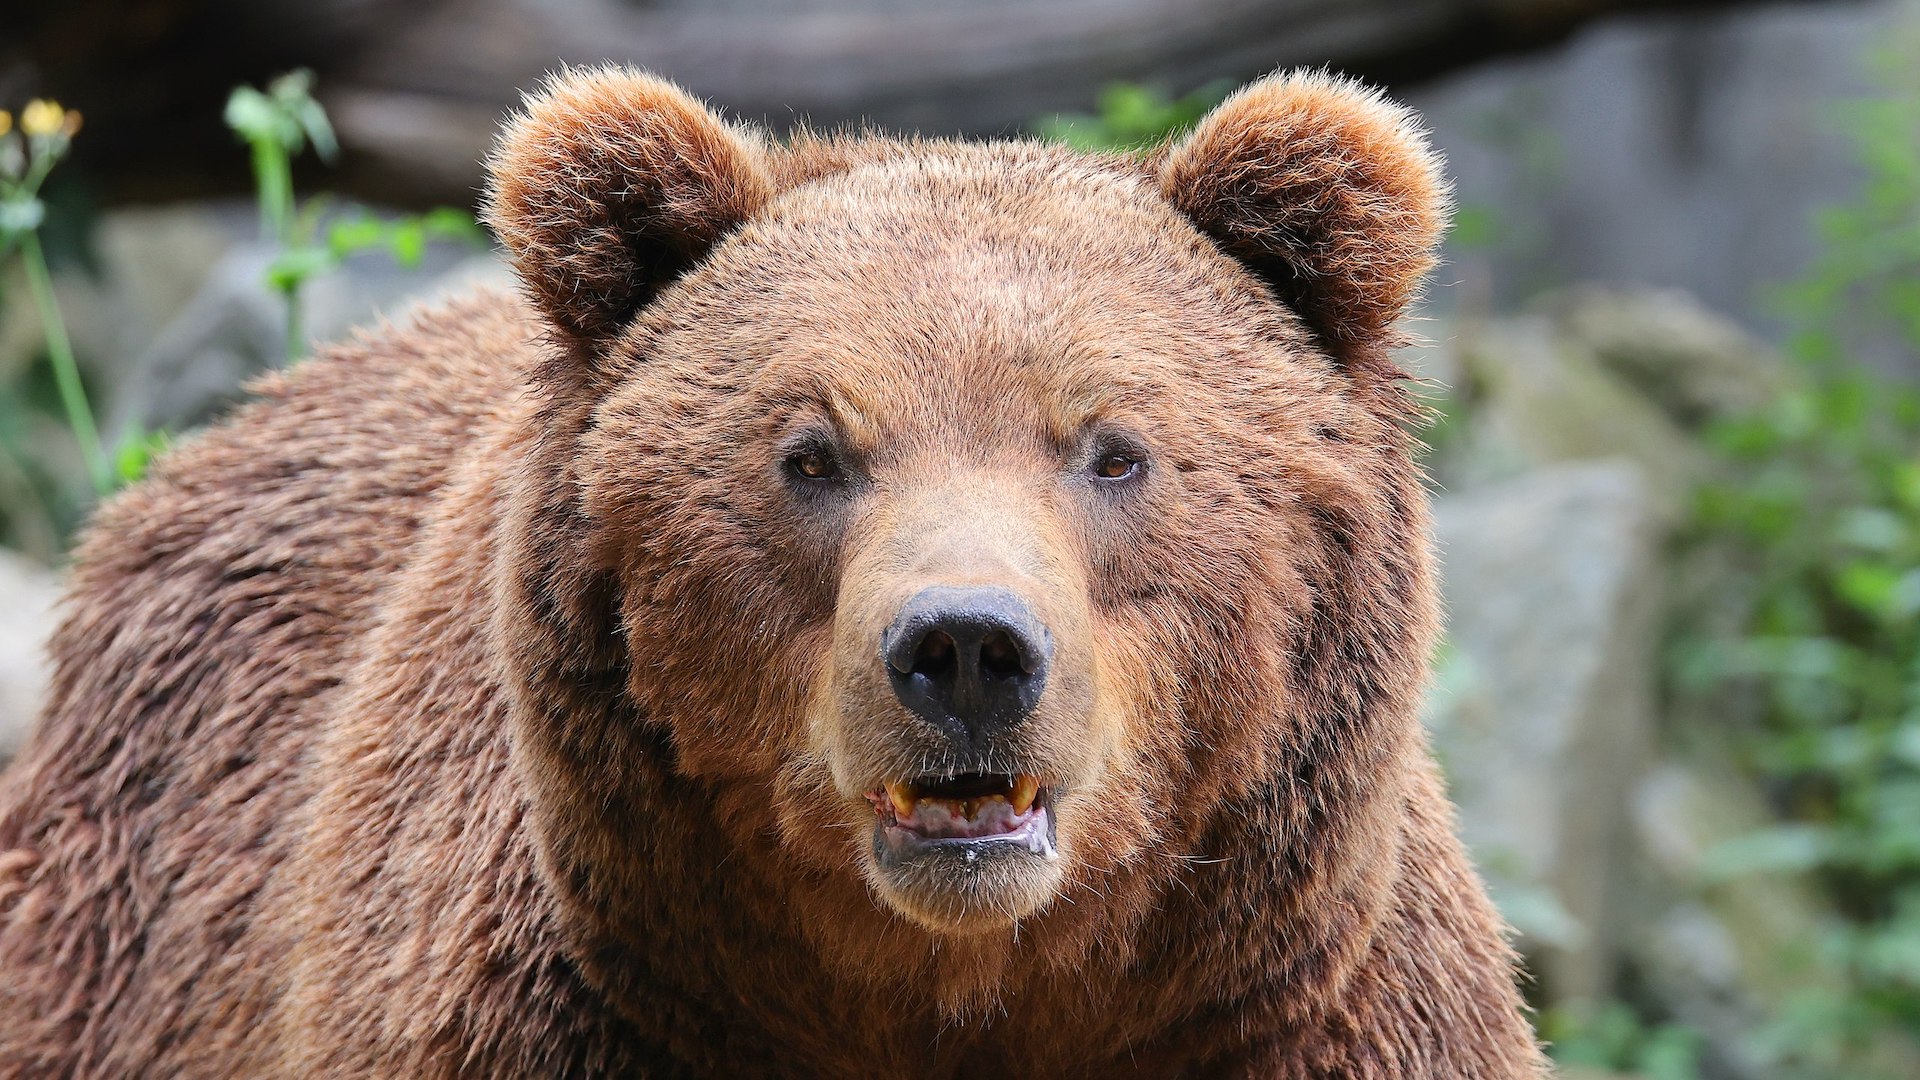 L'orsa si era resa responsabile negli scorsi mesi di due aggressioni nei confronti di essere umani